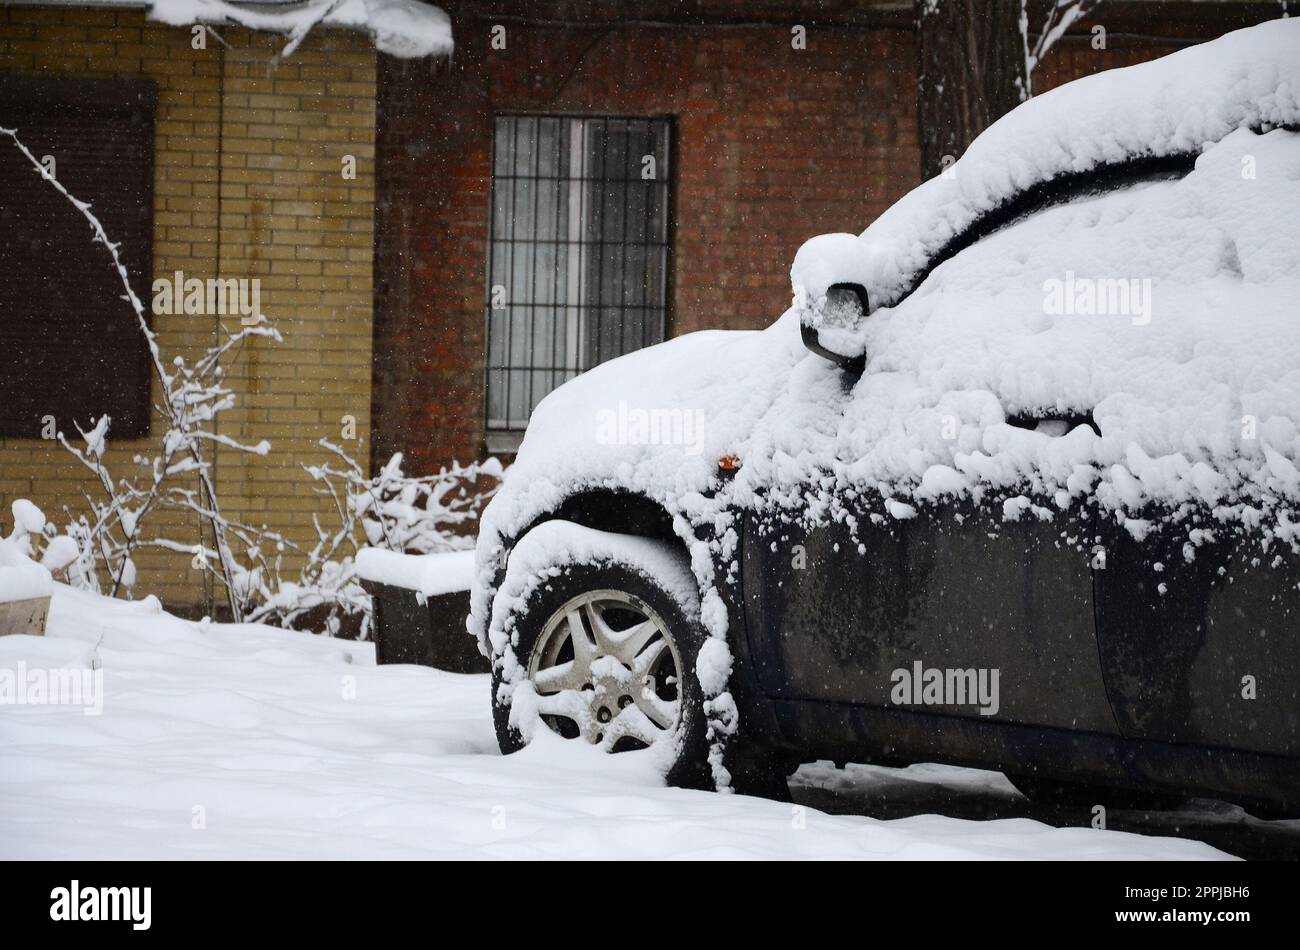 Fragment de la voiture sous une couche de neige après une forte chute de neige. La carrosserie de la voiture est recouverte de neige blanche Banque D'Images